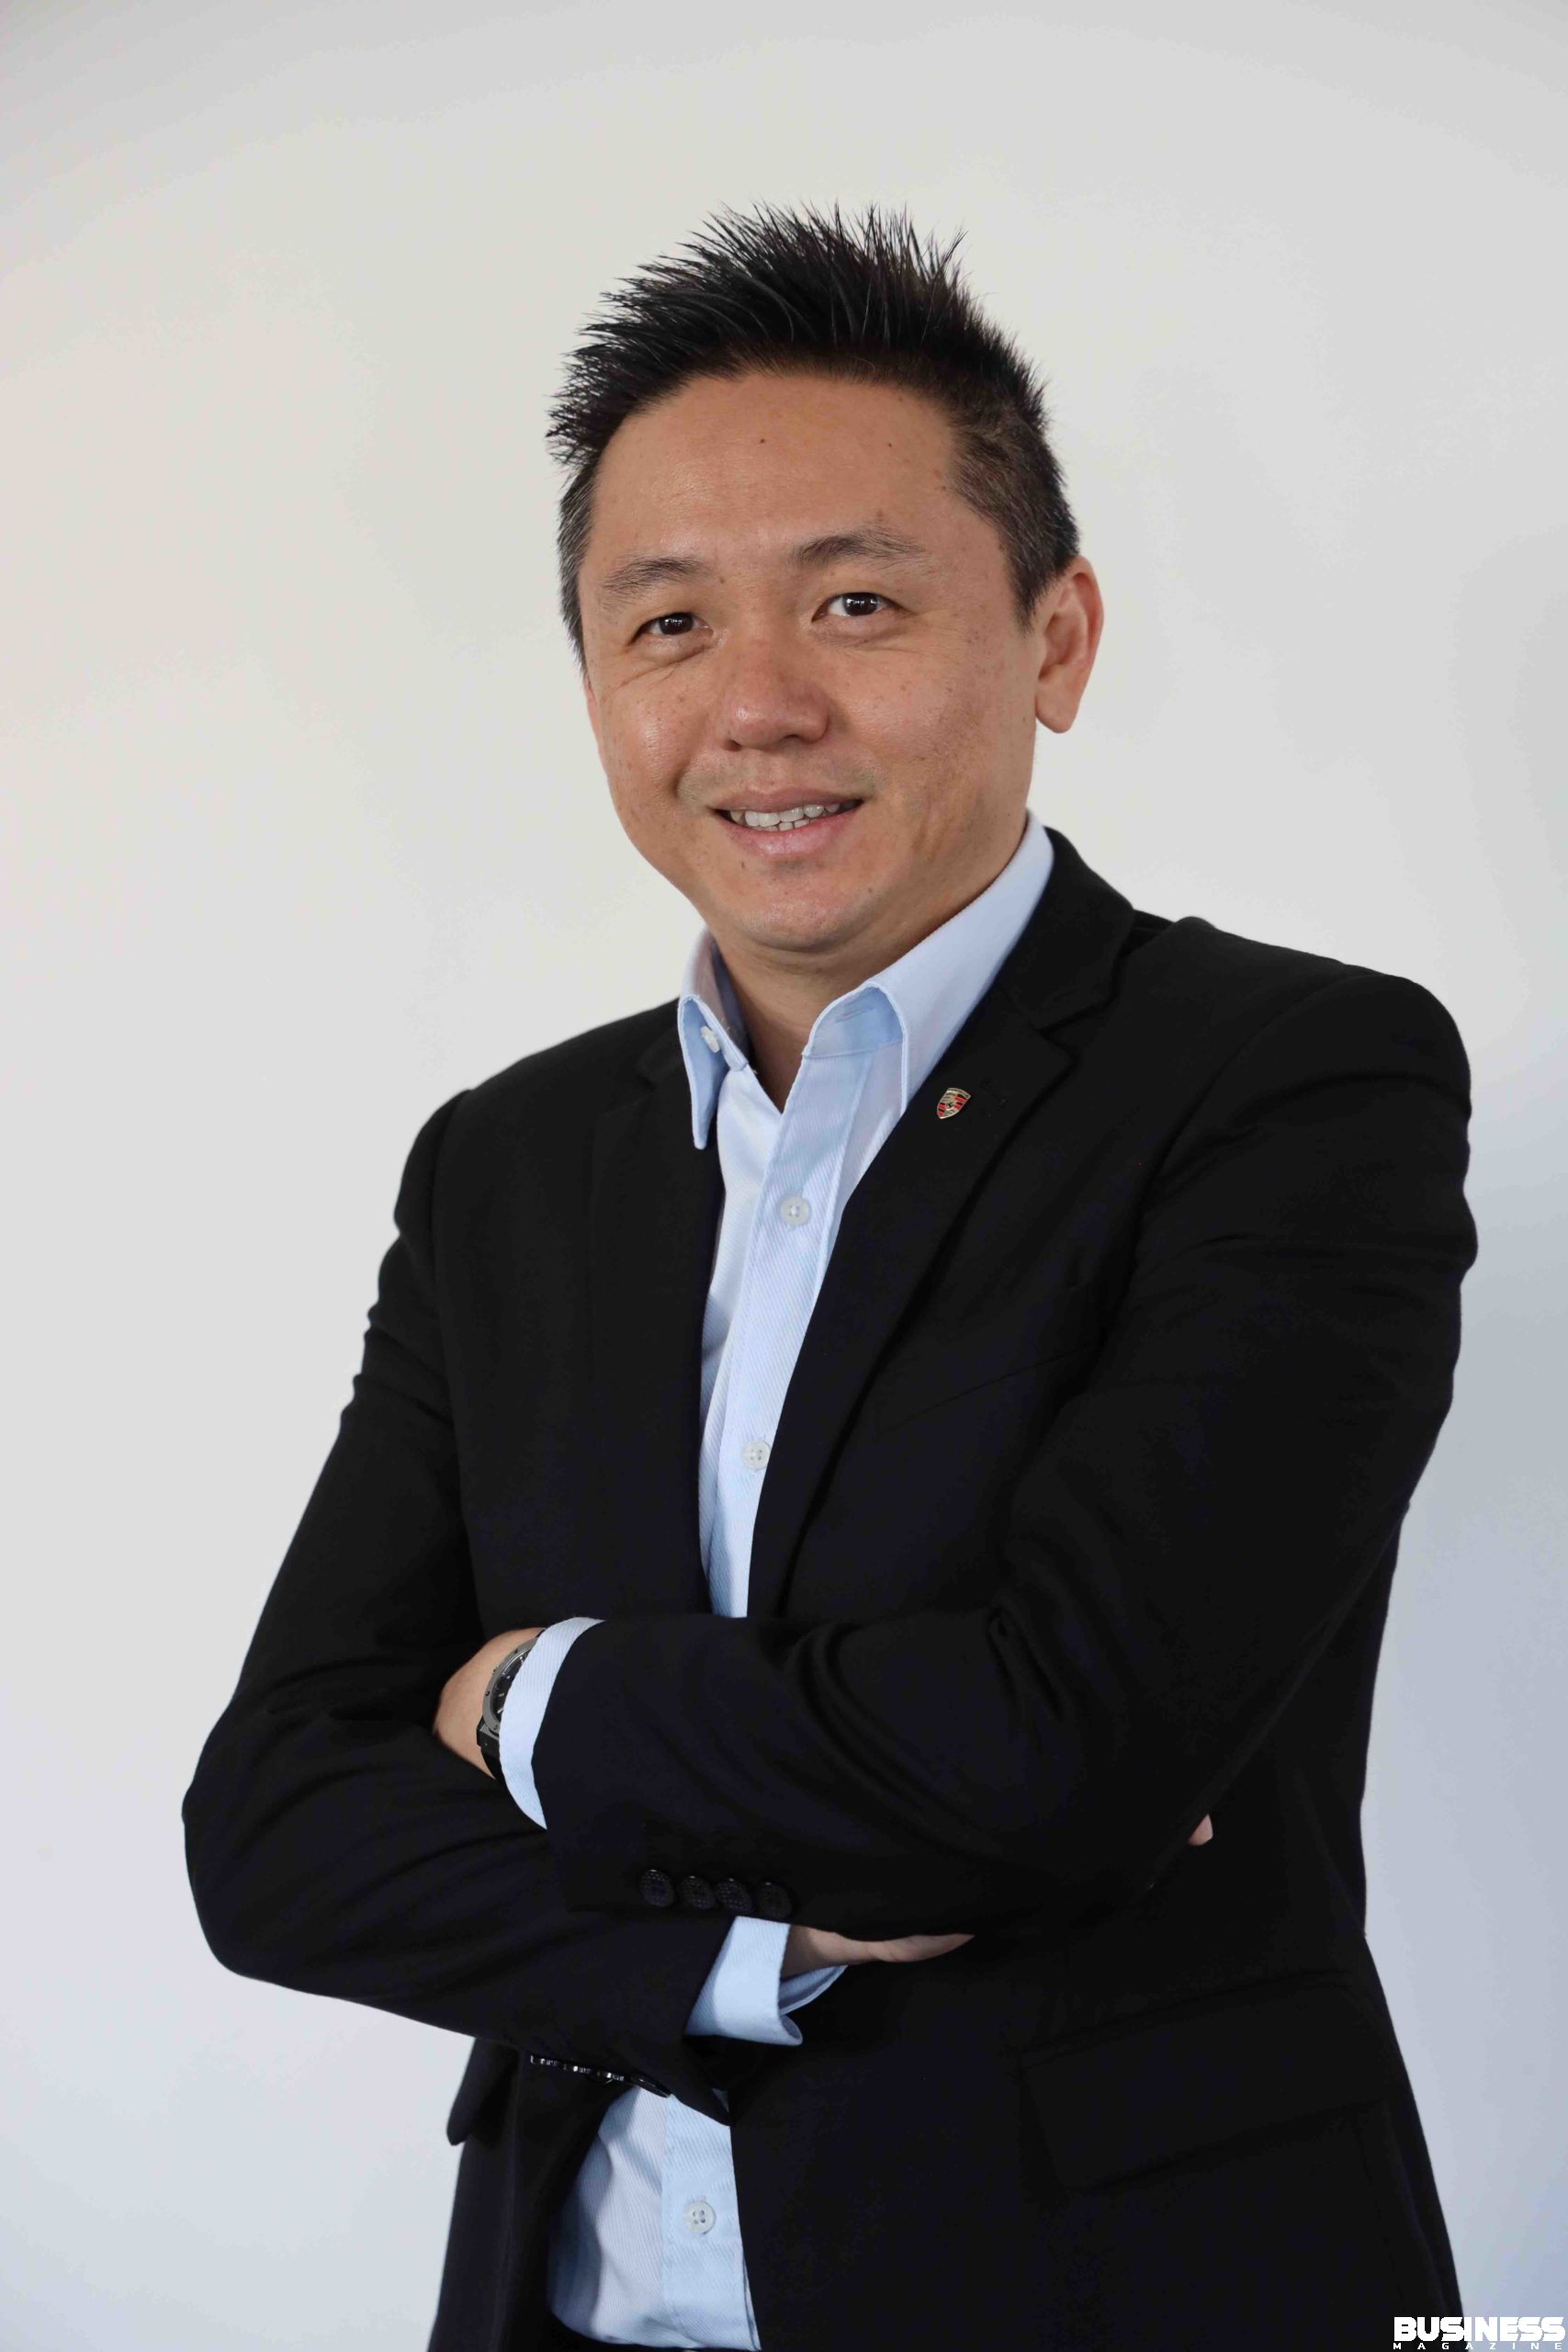 Kevin Kim Lim, Senior Manager